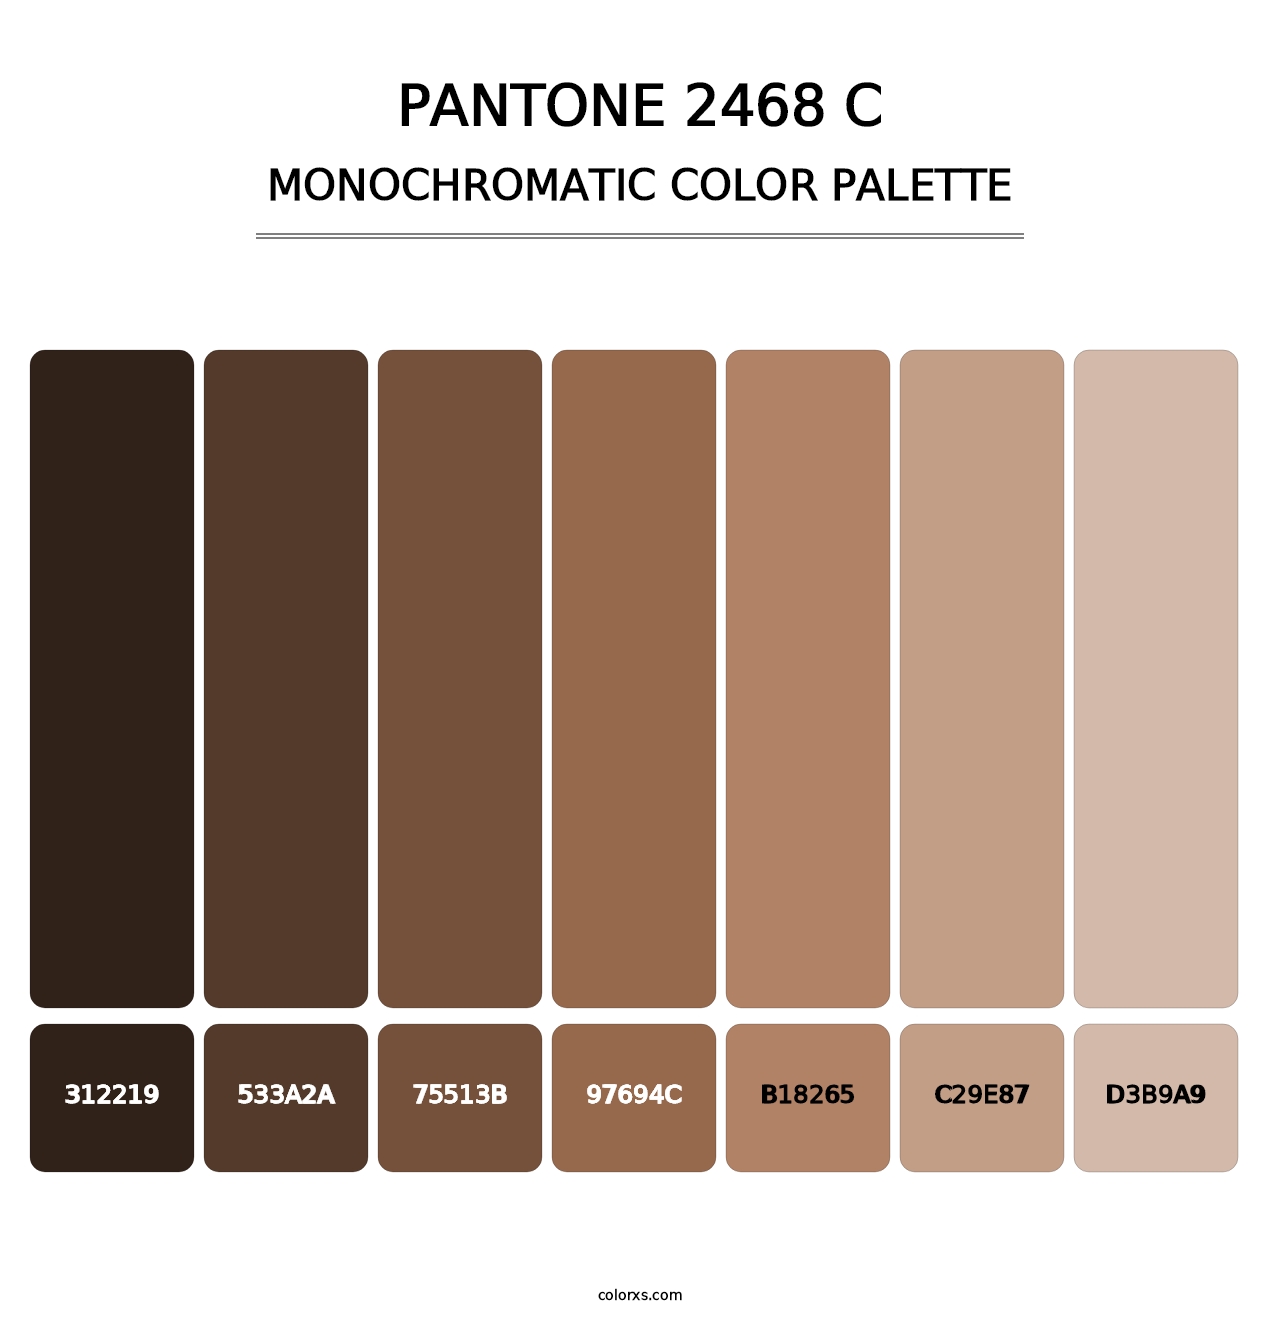 PANTONE 2468 C - Monochromatic Color Palette